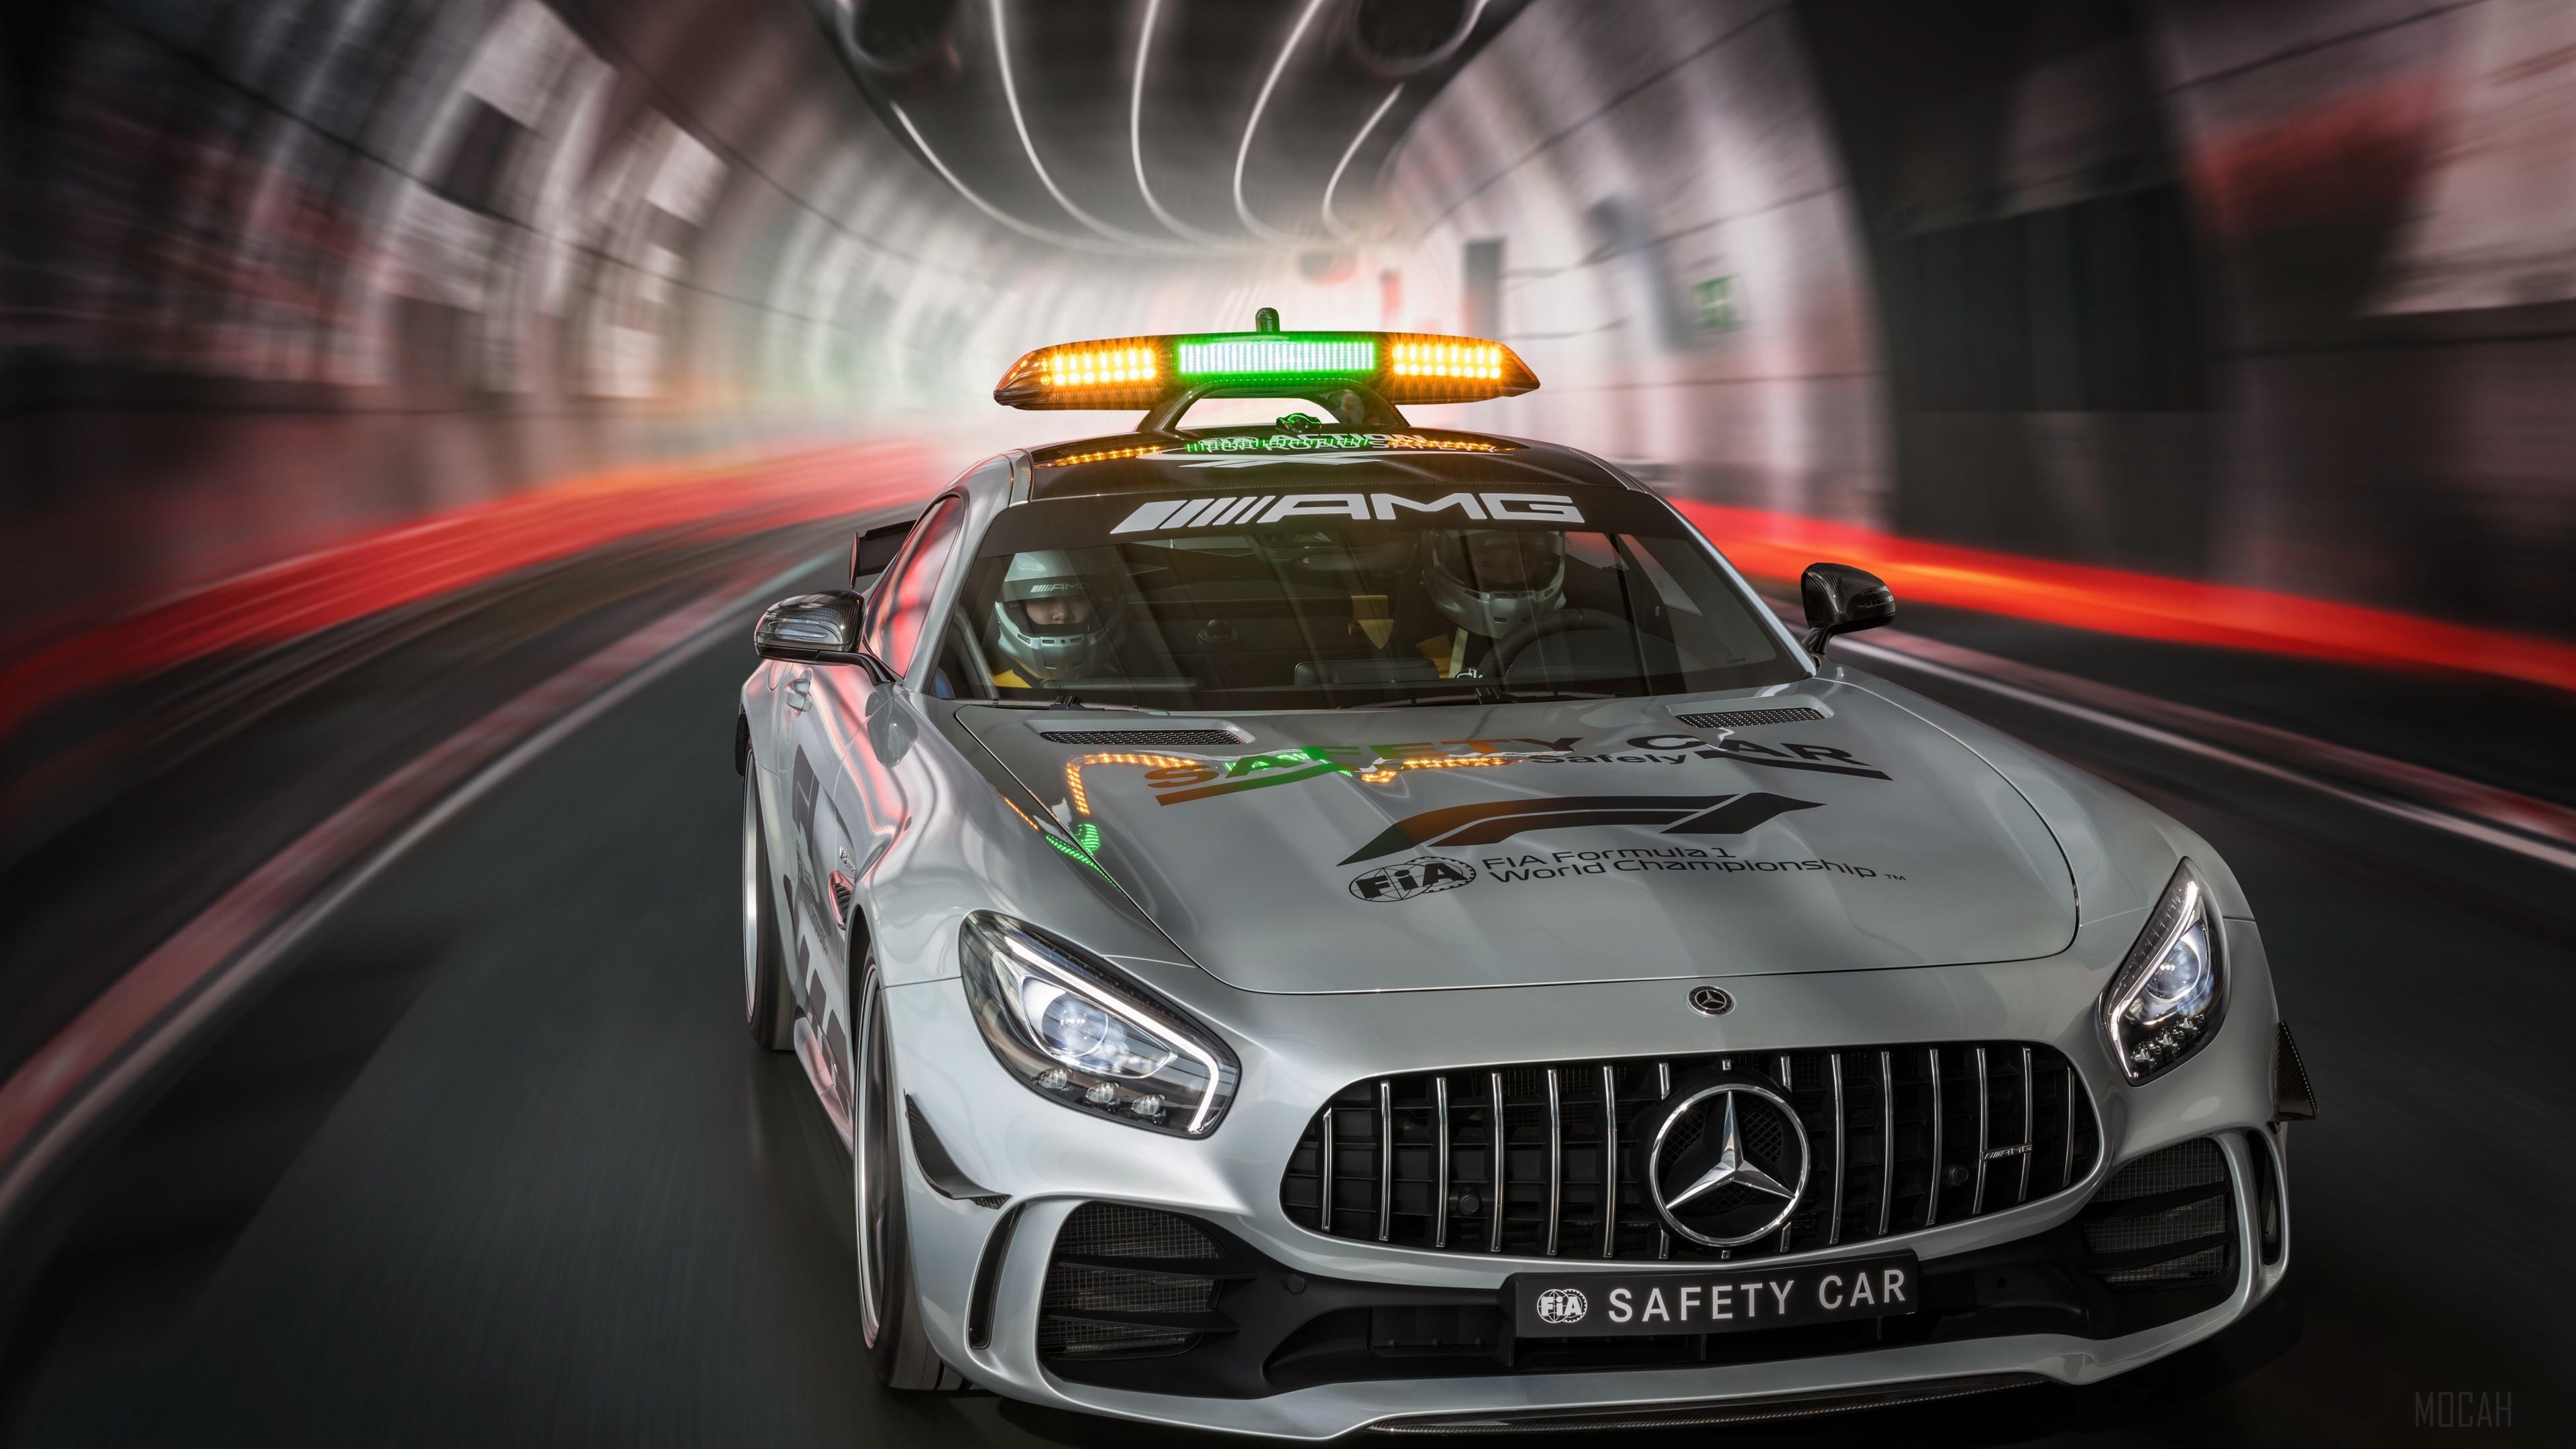 HD wallpaper, 2018 Mercedes Amg Gt R F1 Safety Car 4K